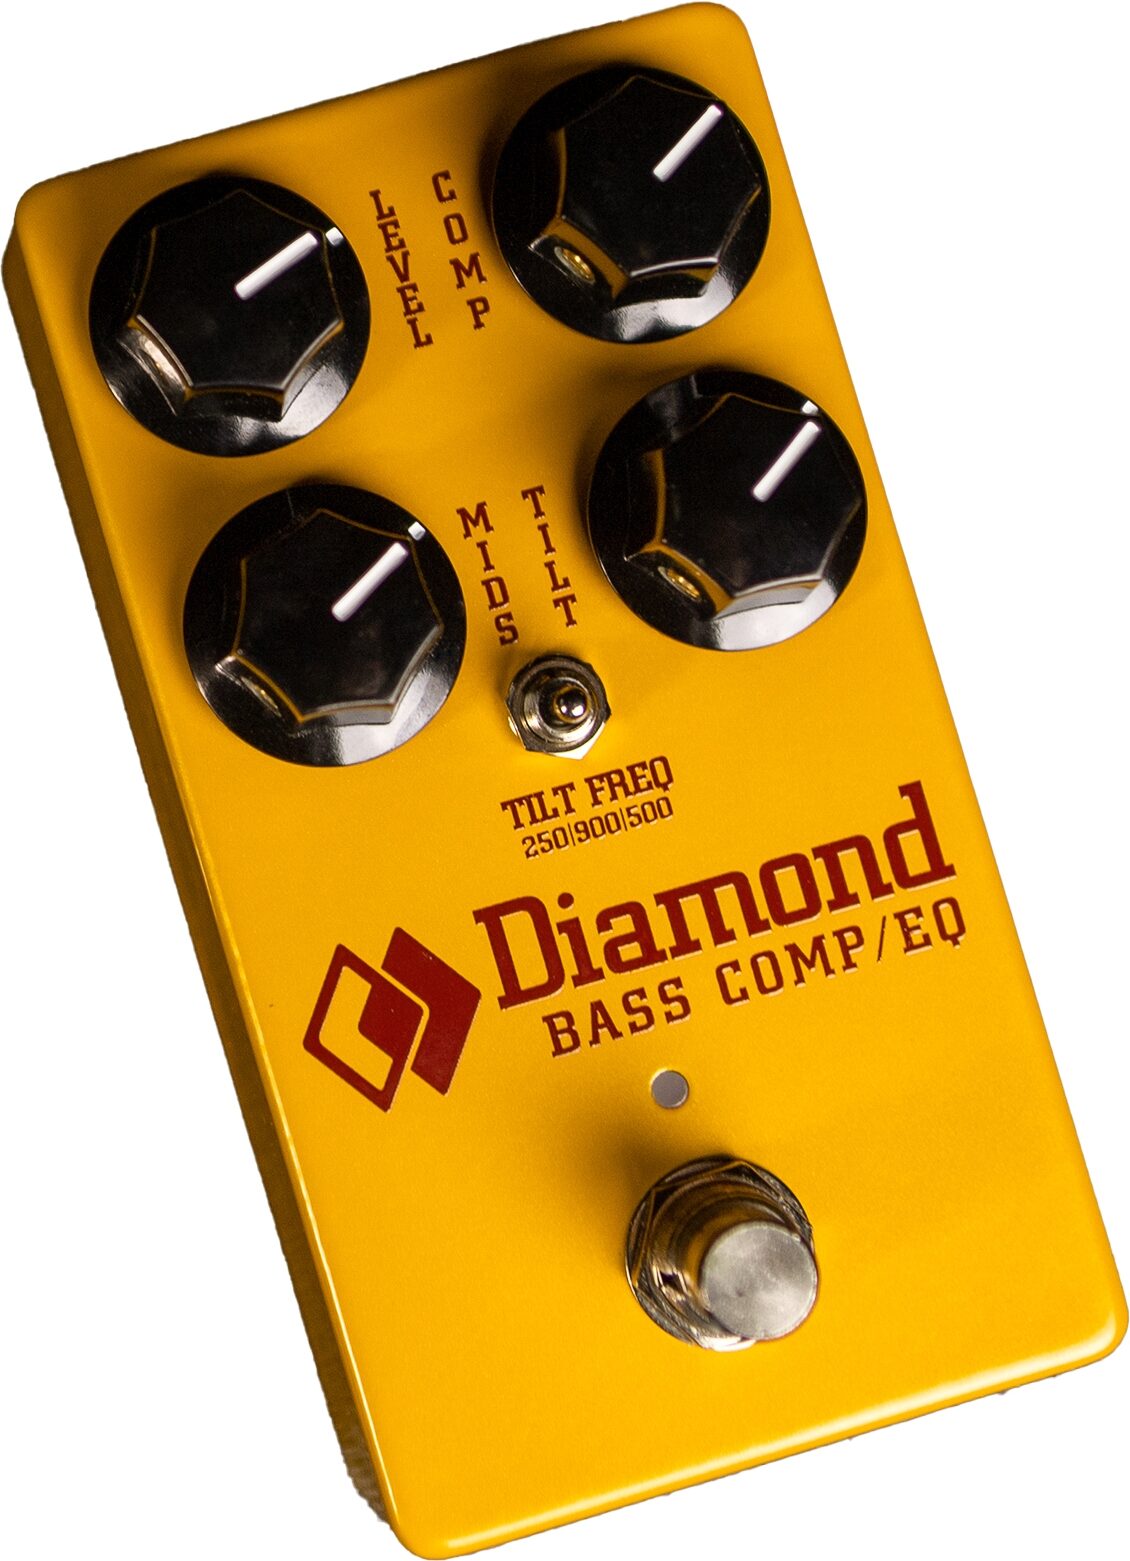 Diamond Bass Comp/EQ Compressor Pedal